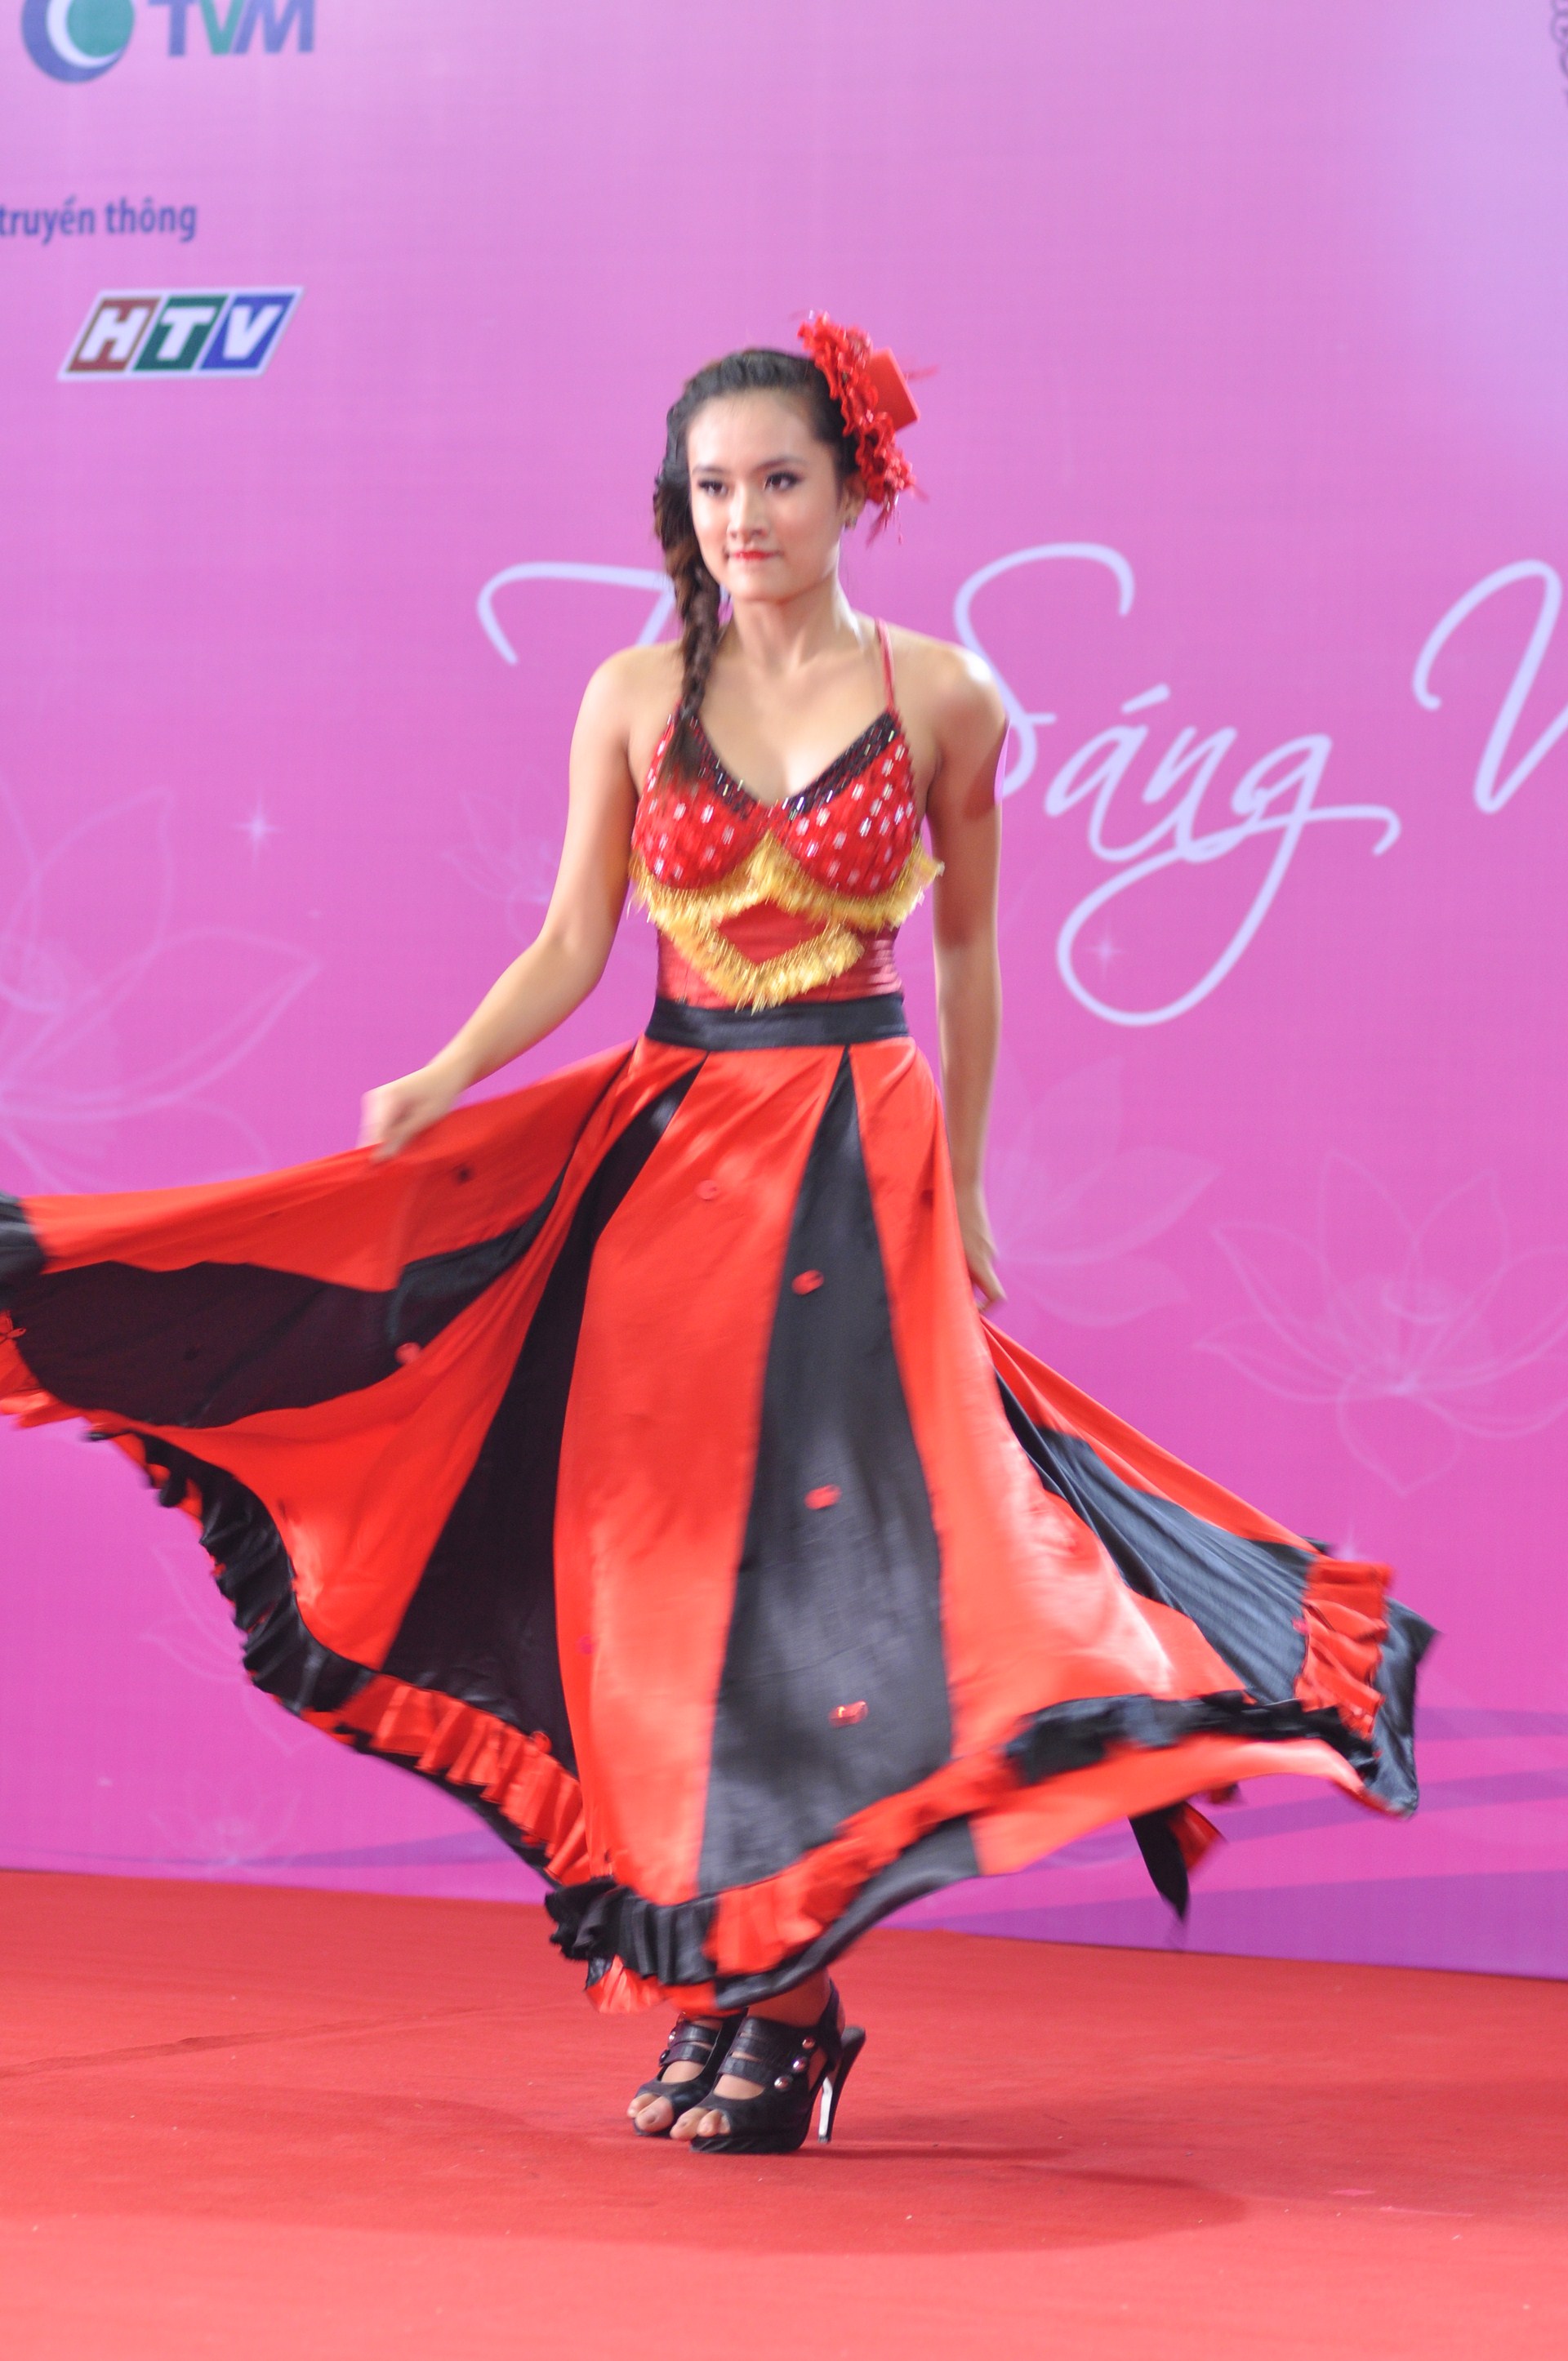 Nguyễn Thu Trang đến từ Thái Nguyên sôi động và lôi cuốn trong điệu nhảy Flamenco.JPG